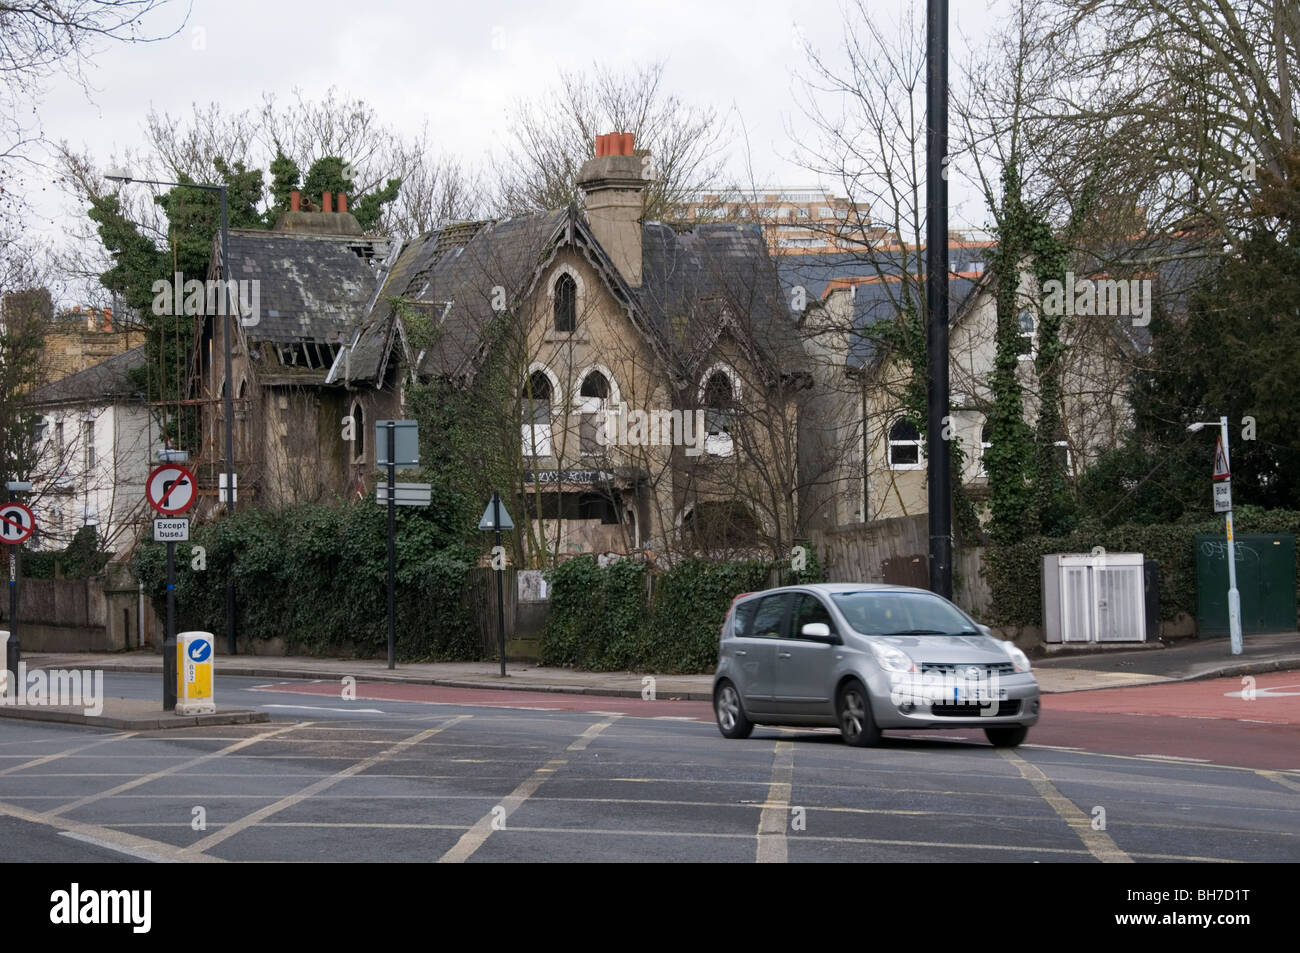 Das Haus aus Beton in Herrschaft Lane, East Dulwich, London.   WEITERE DETAILS IN DER BESCHREIBUNG. Stockfoto